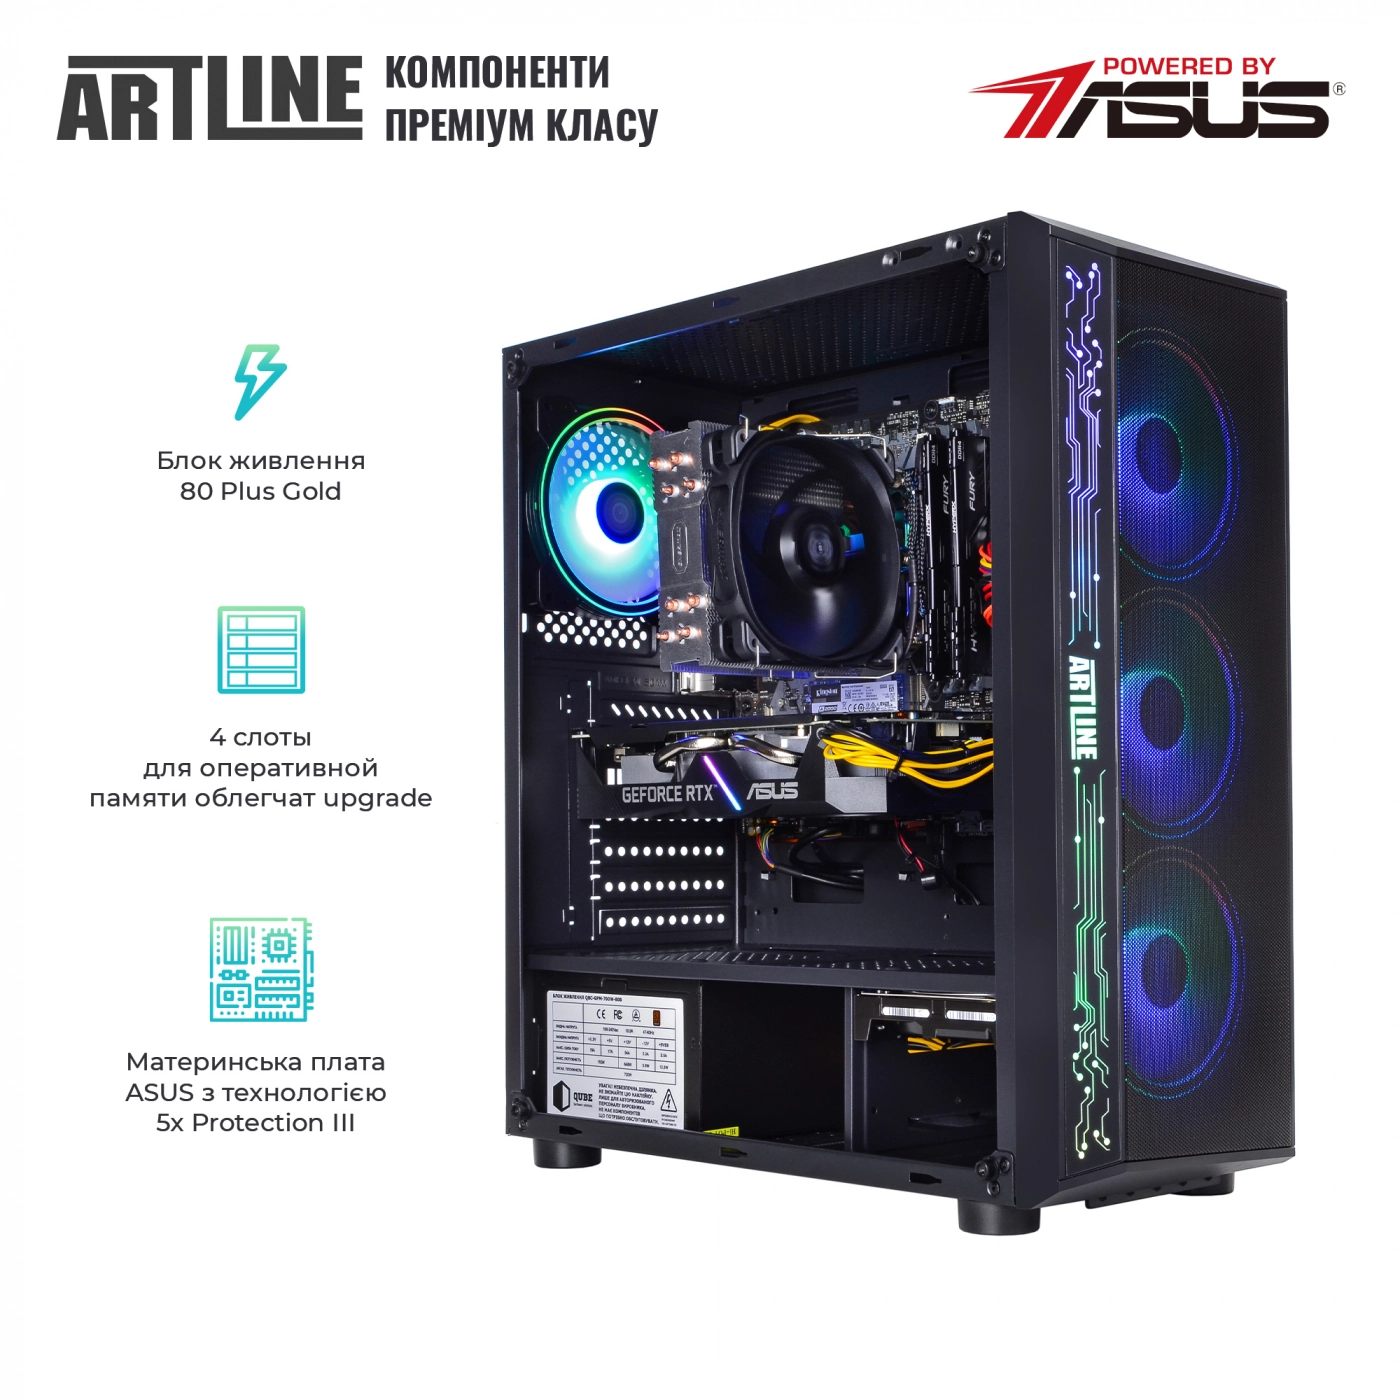 Купить Компьютер ARTLINE Gaming X75v24 - фото 2